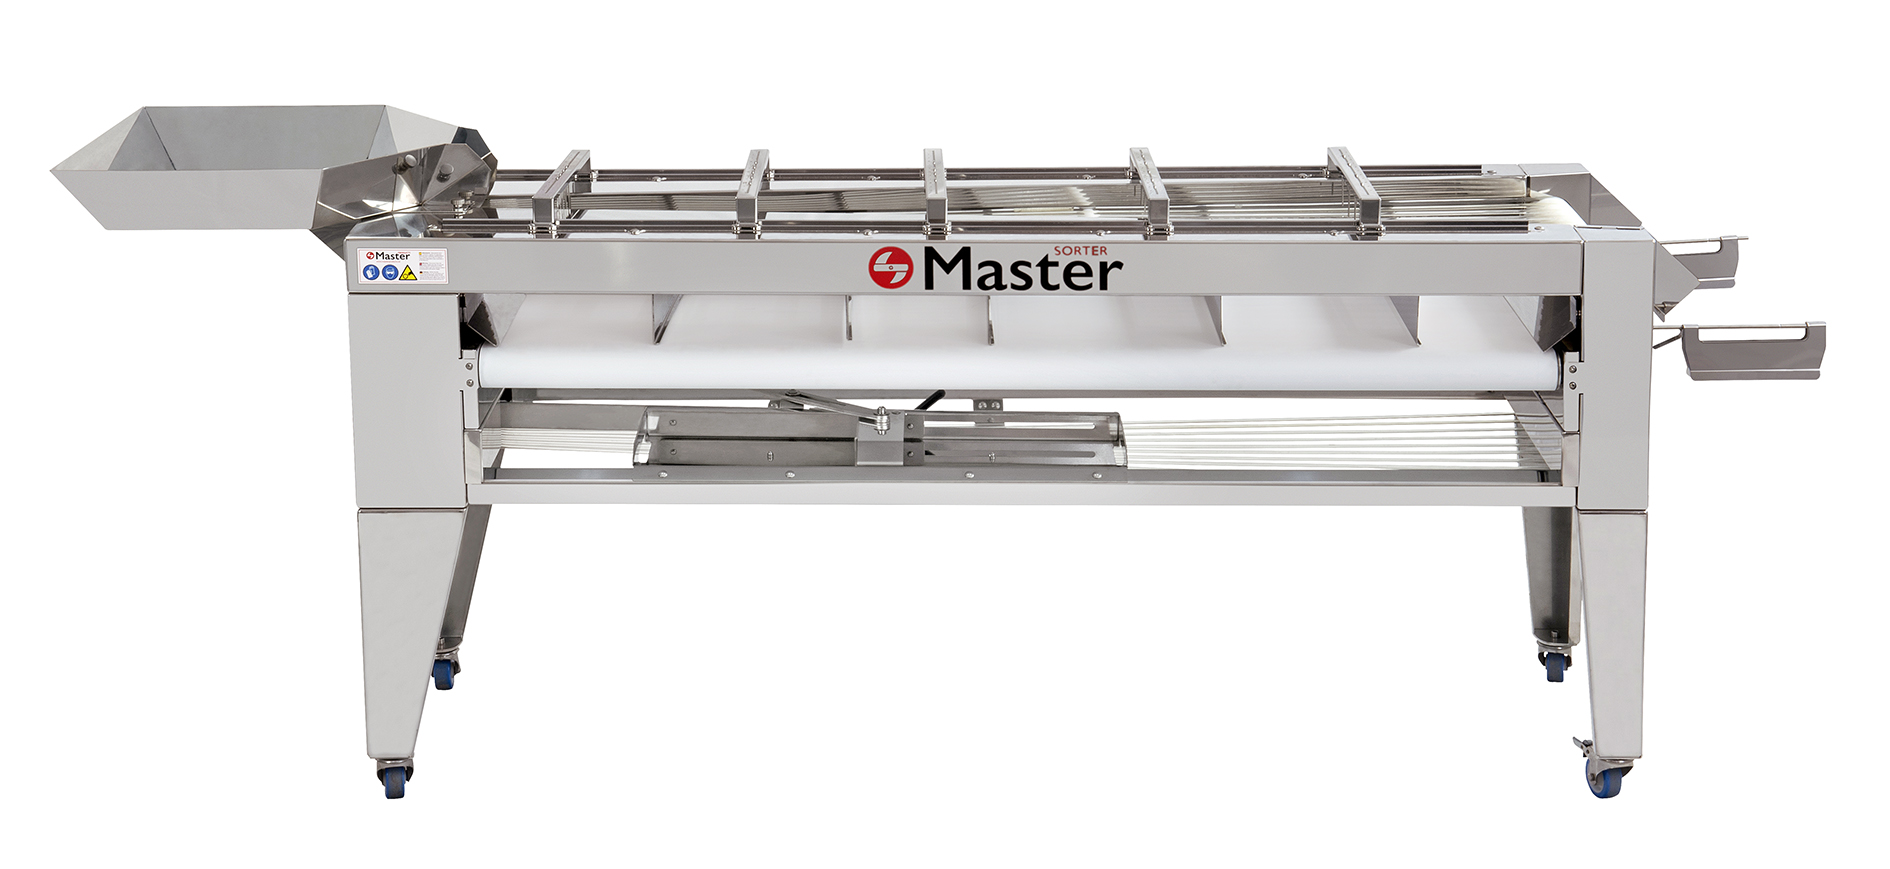 MASTER SORTER 500 MED - Master Products